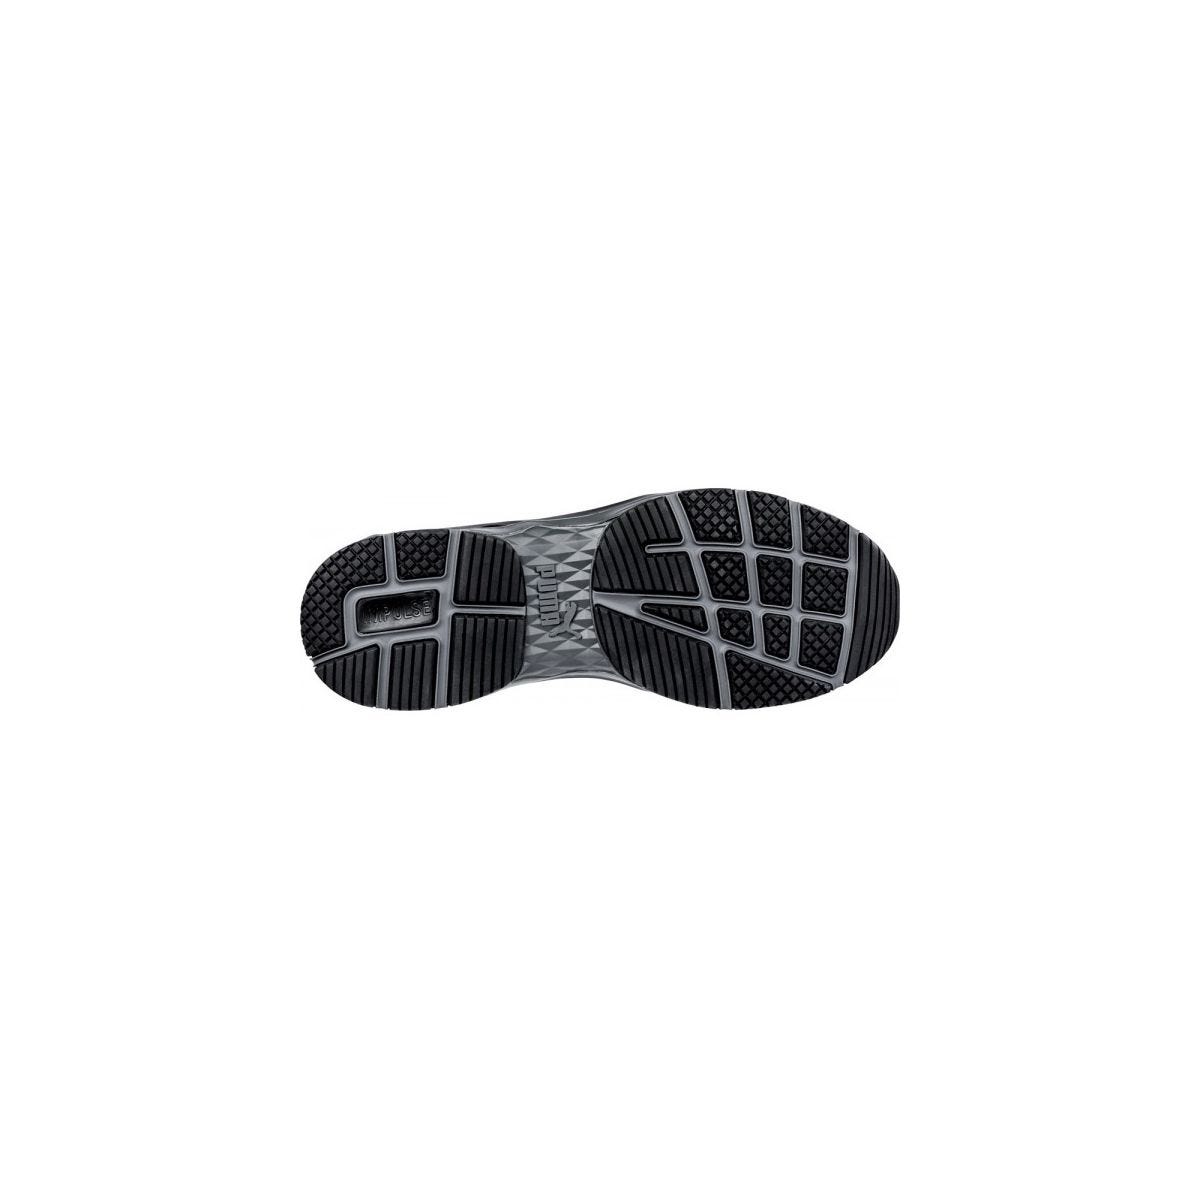 Chaussures de sécurité Velocity 2.0 Noir Low S3 - Puma - Taille 42 4